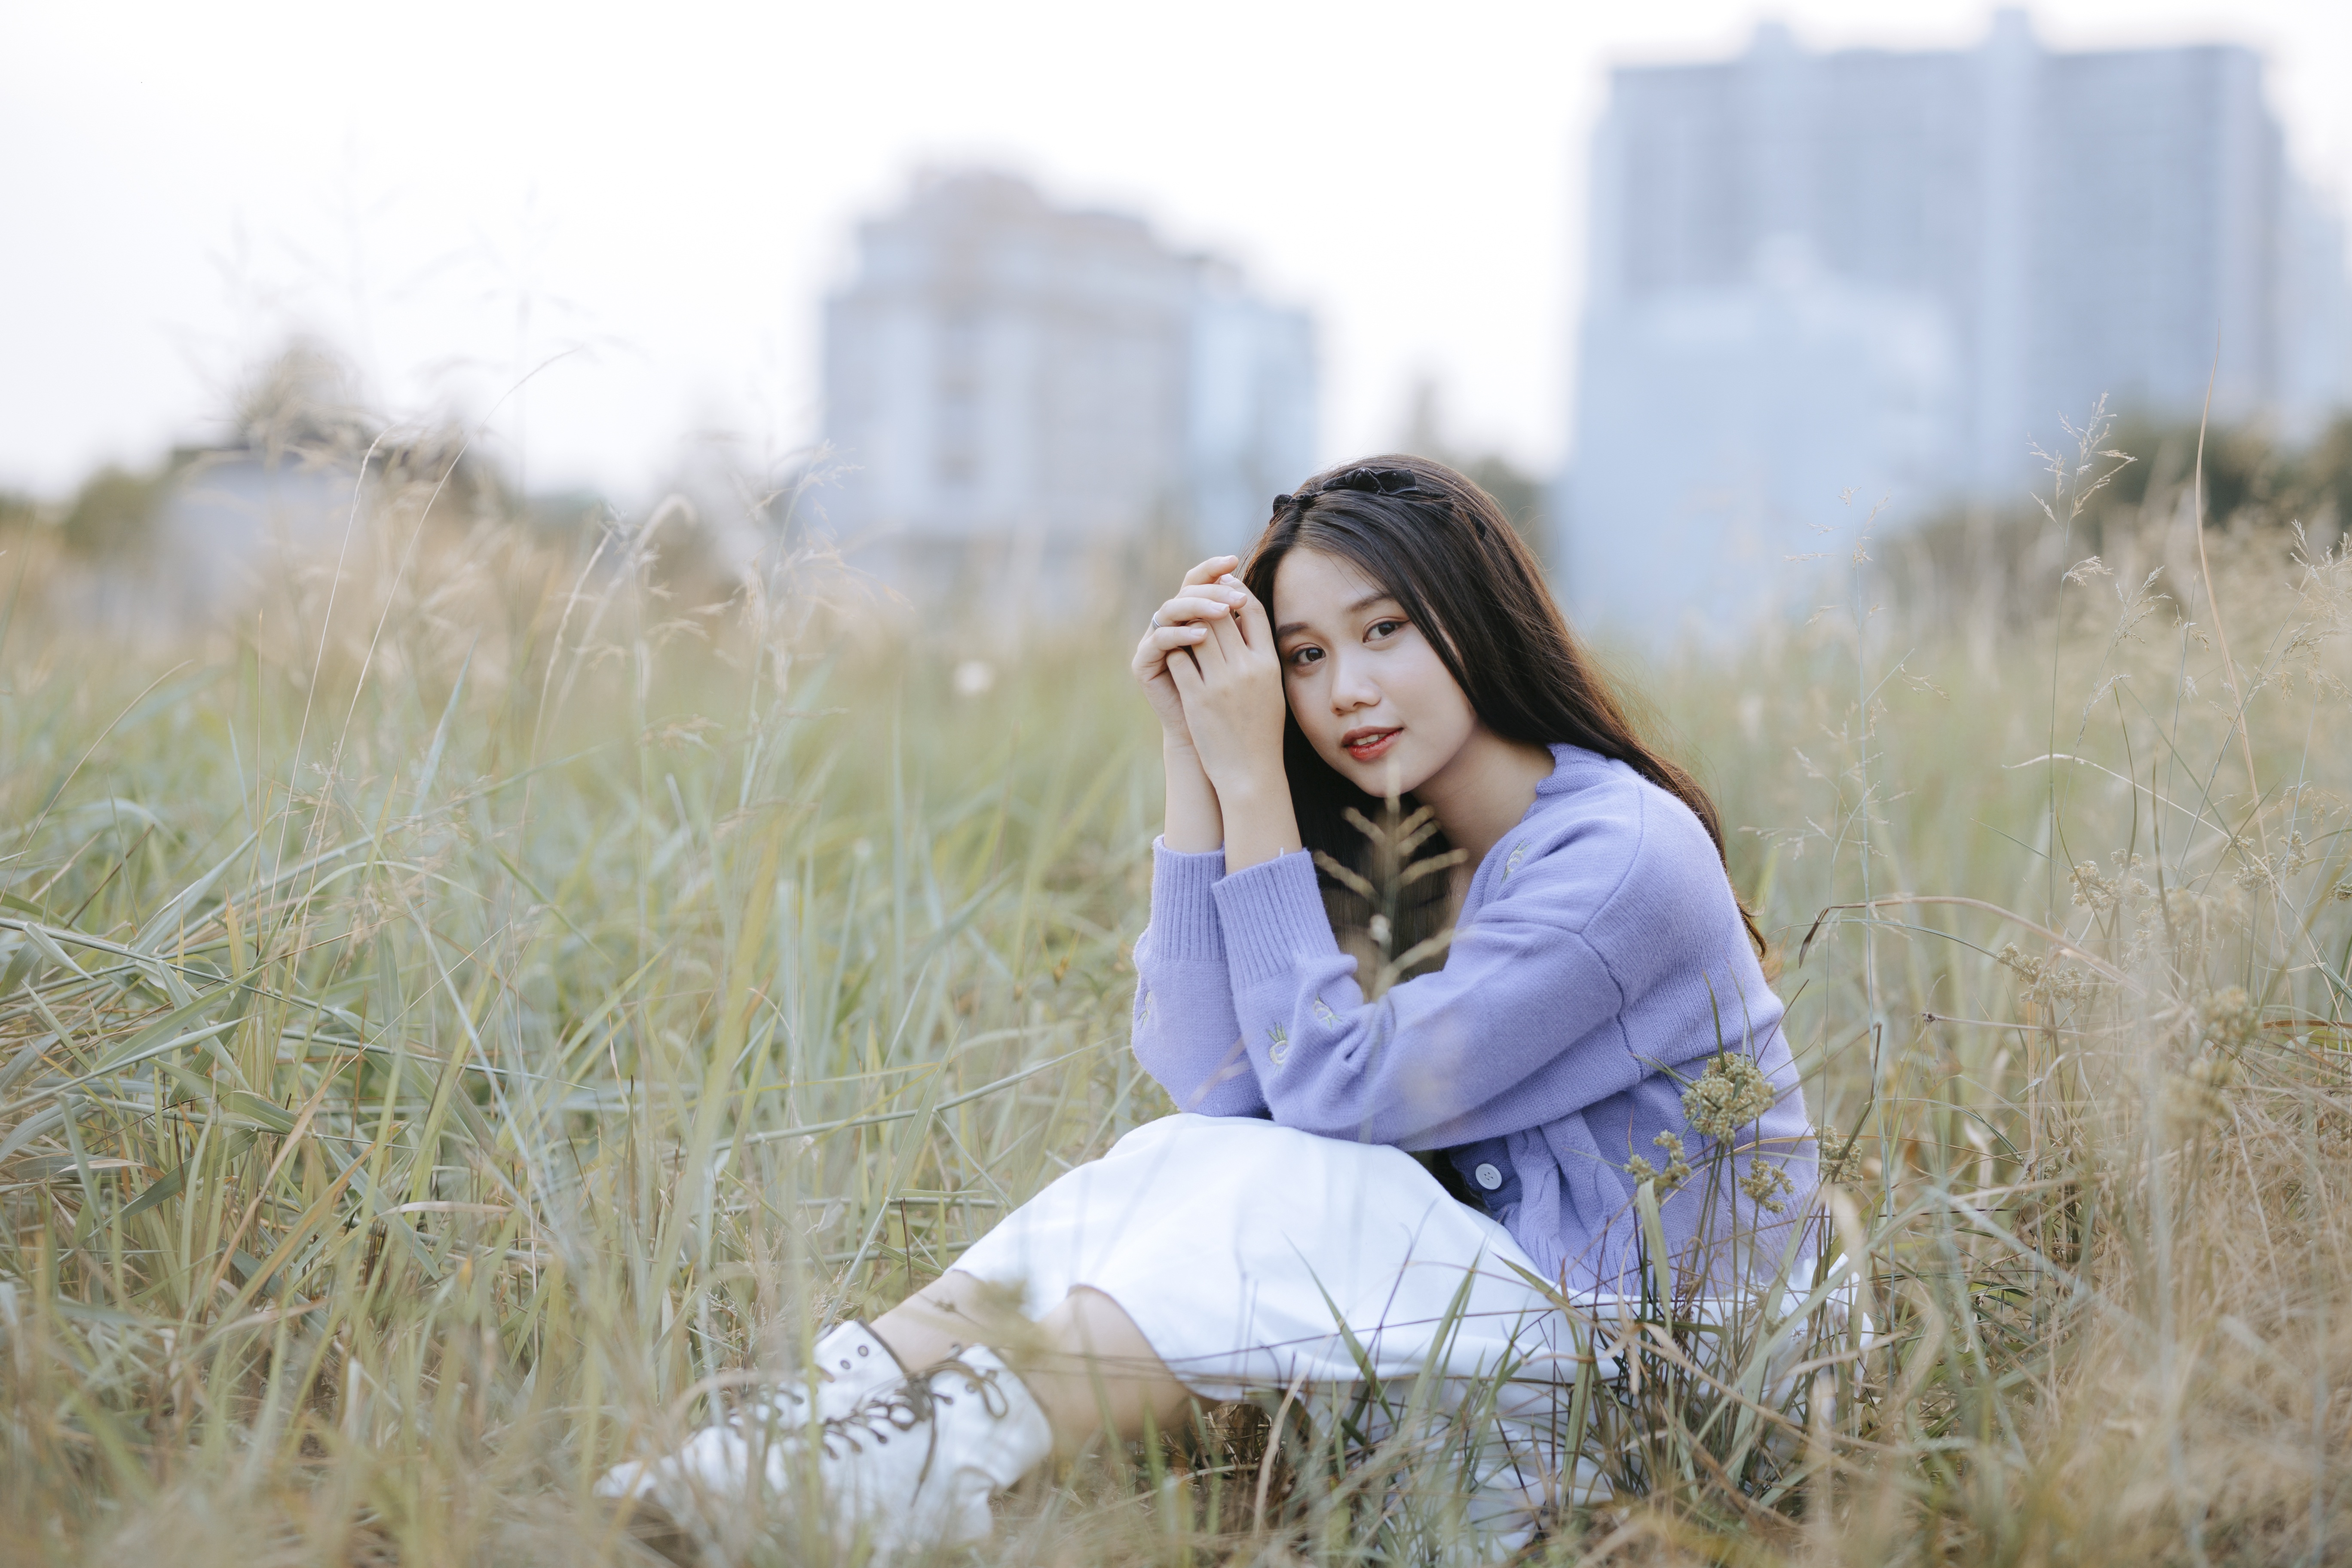 Asian Model Women Long Hair Dark Hair Sitting Field Depth Of Field White Boots White Skirt Pullover 5472x3648